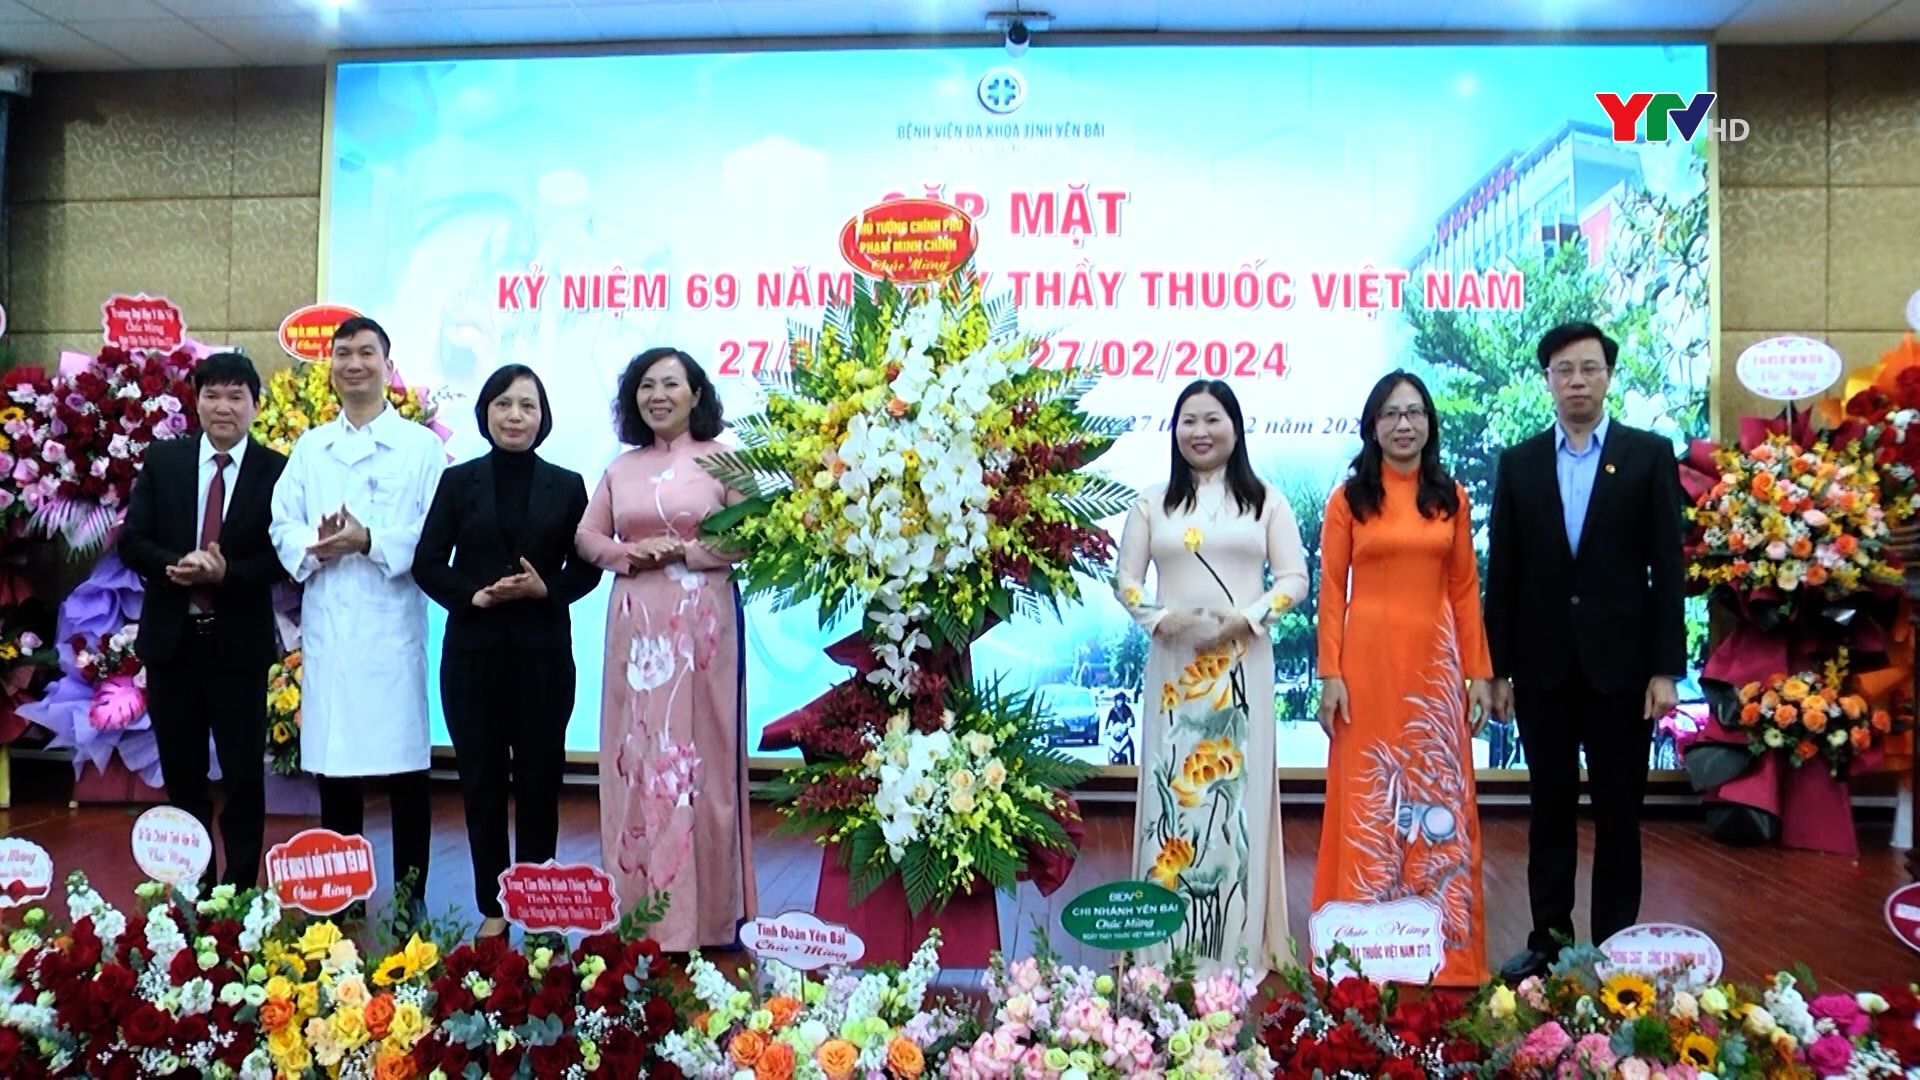 Bệnh viện Đa khoa tỉnh Yên Bái gặp mặt kỷ niệm 69 năm Ngày Thầy thuốc Việt Nam